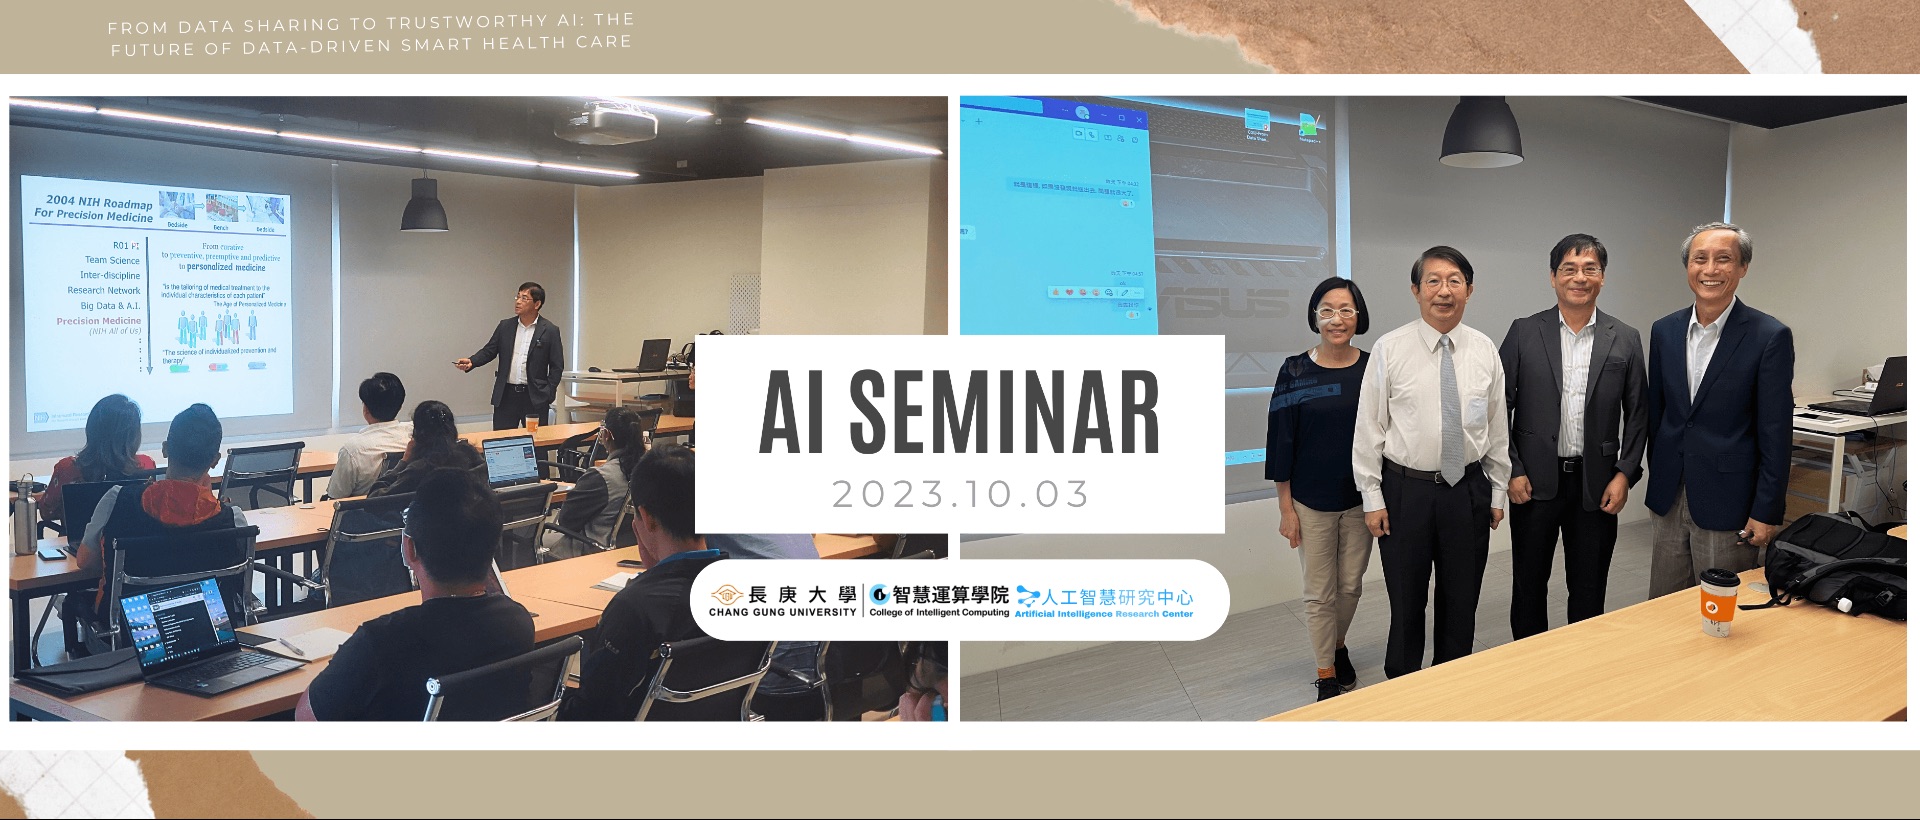 AI Seminar Banner 1003